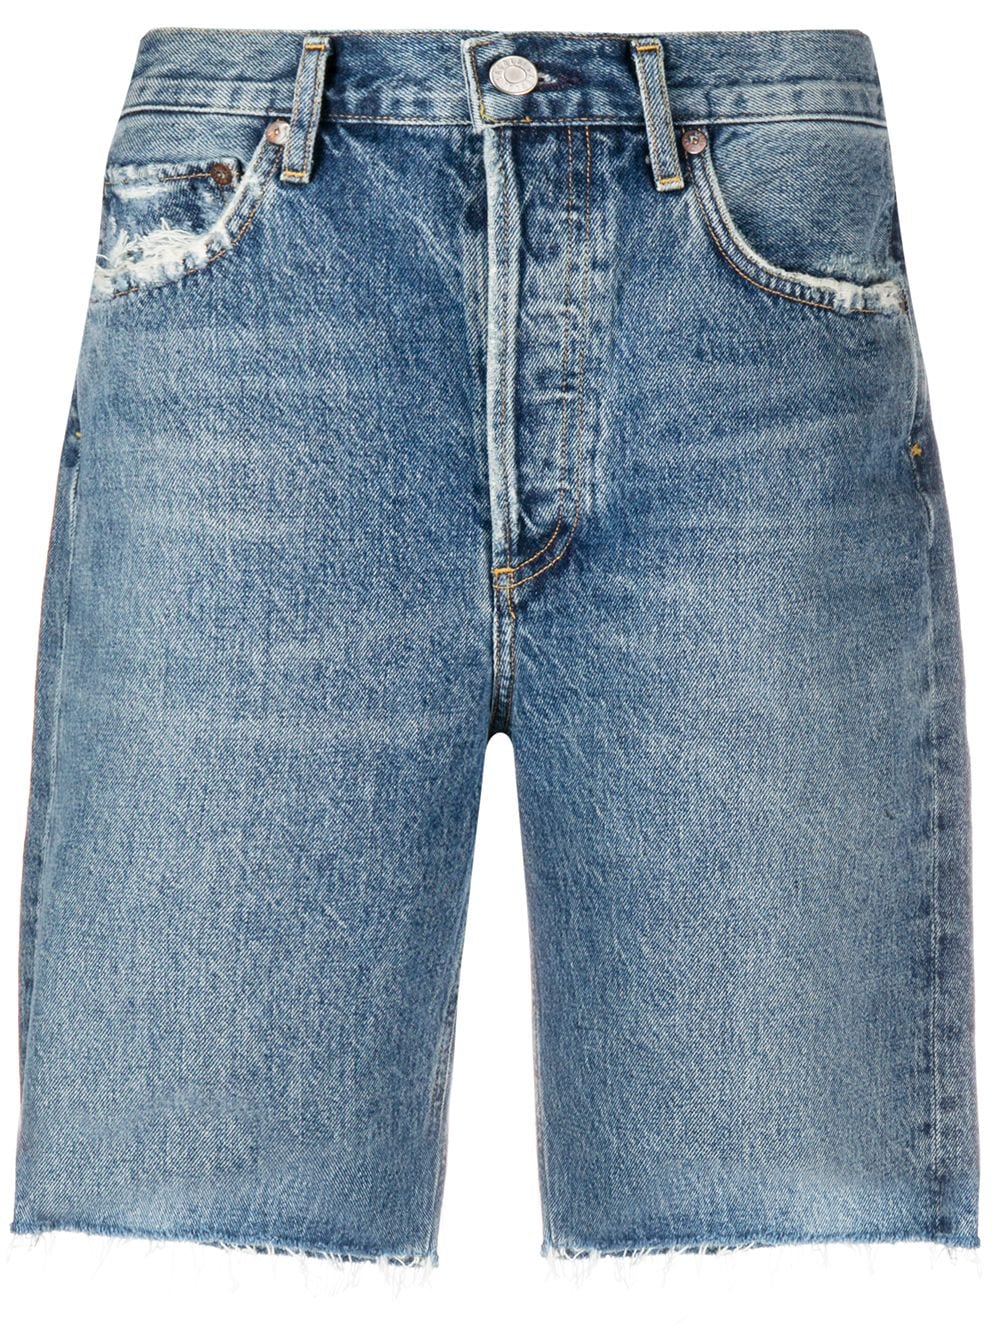 фото Agolde джинсовые шорты прямого кроя